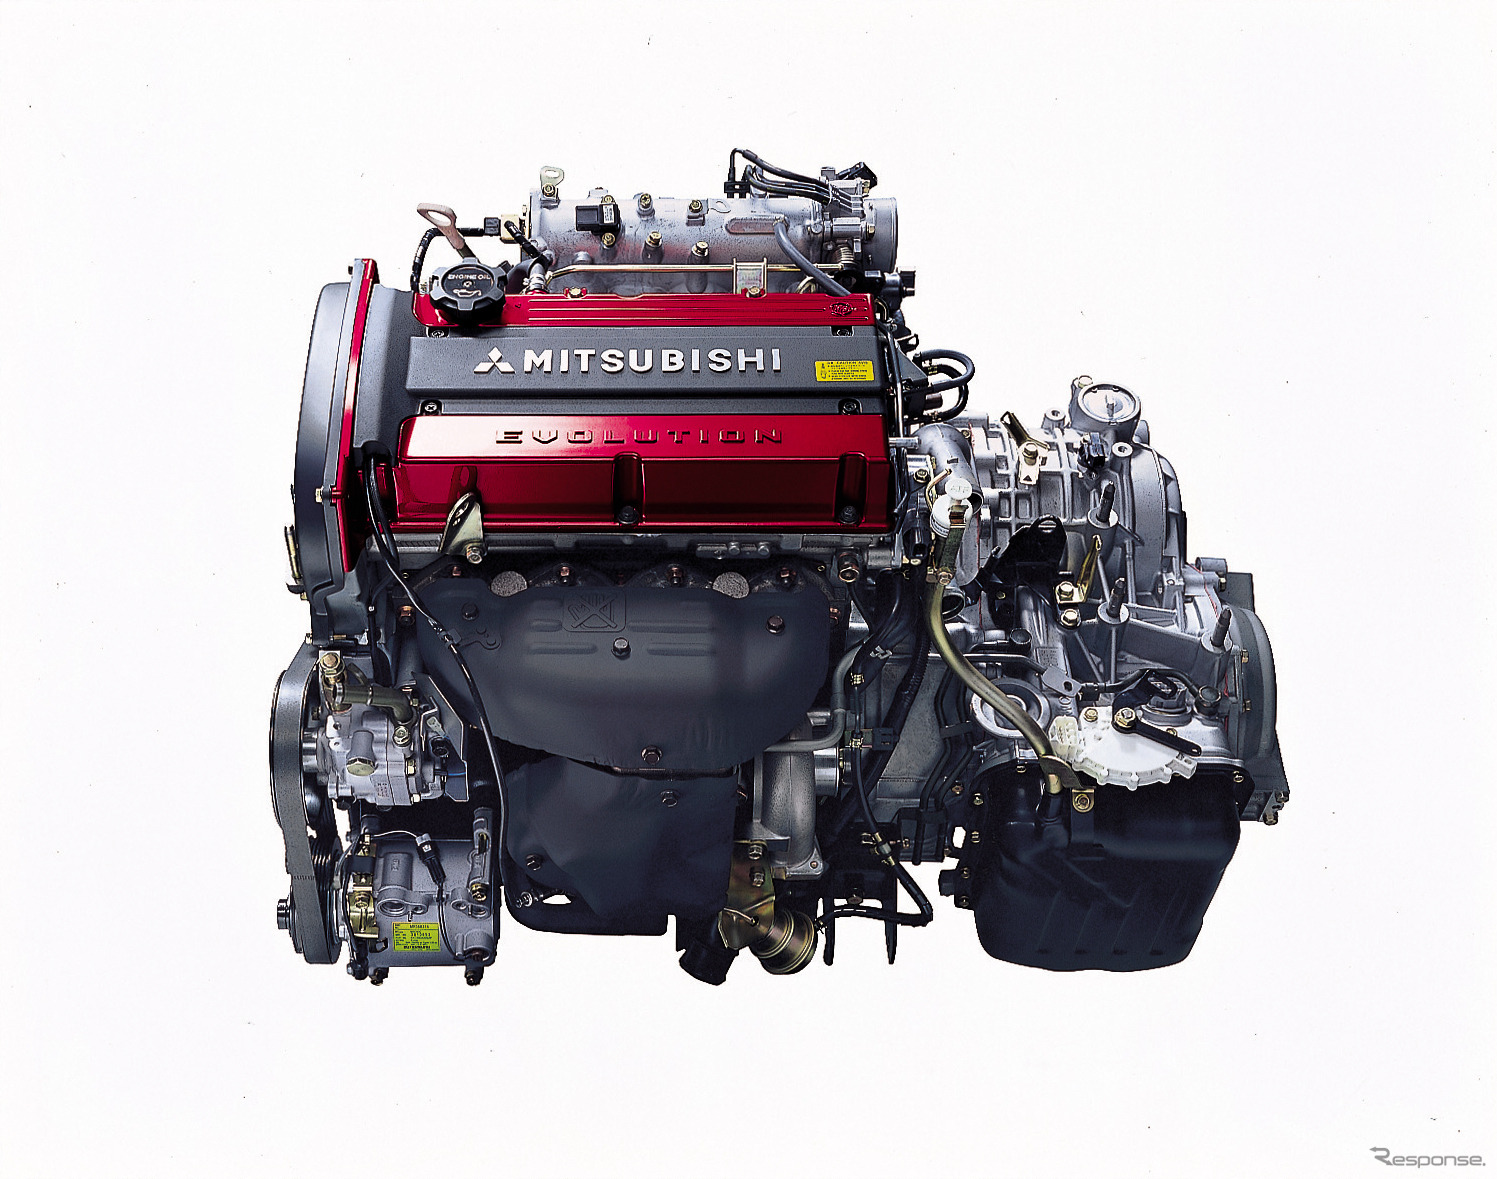 GT-Aには272psの4G63型エンジンが組み合わせられる